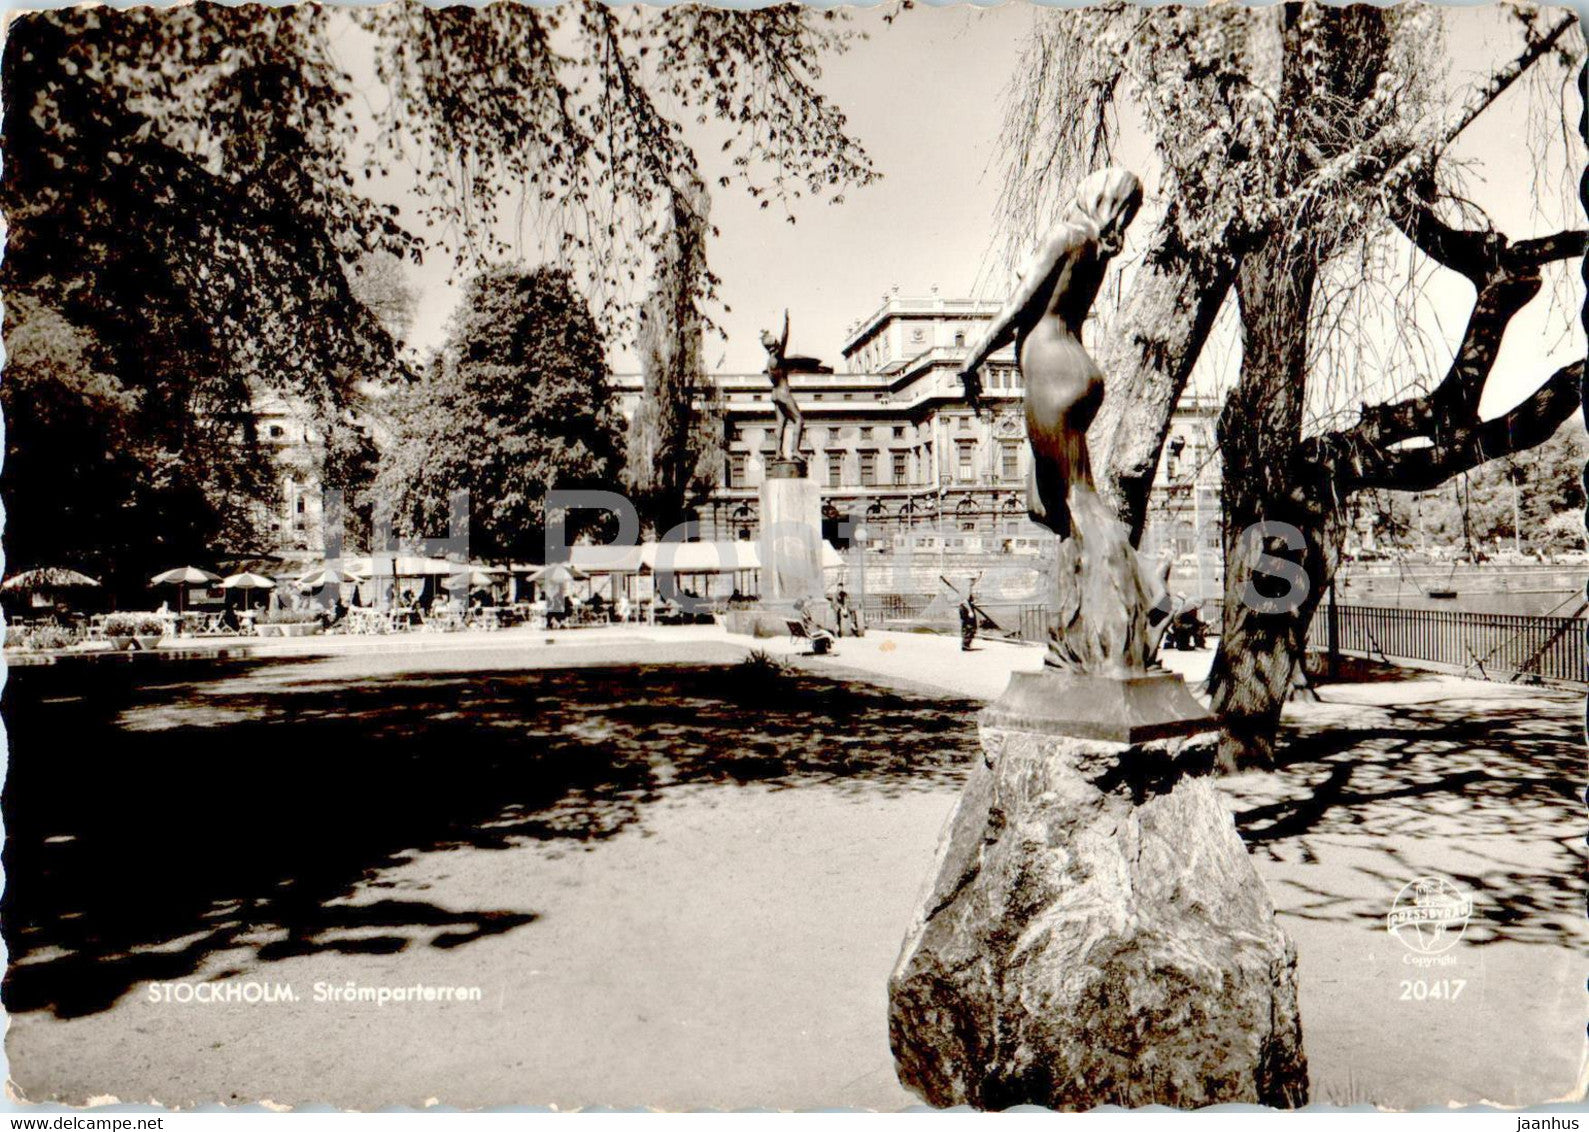 Stockholm - Stromparterren - 20417 - Sweden - used - JH Postcards